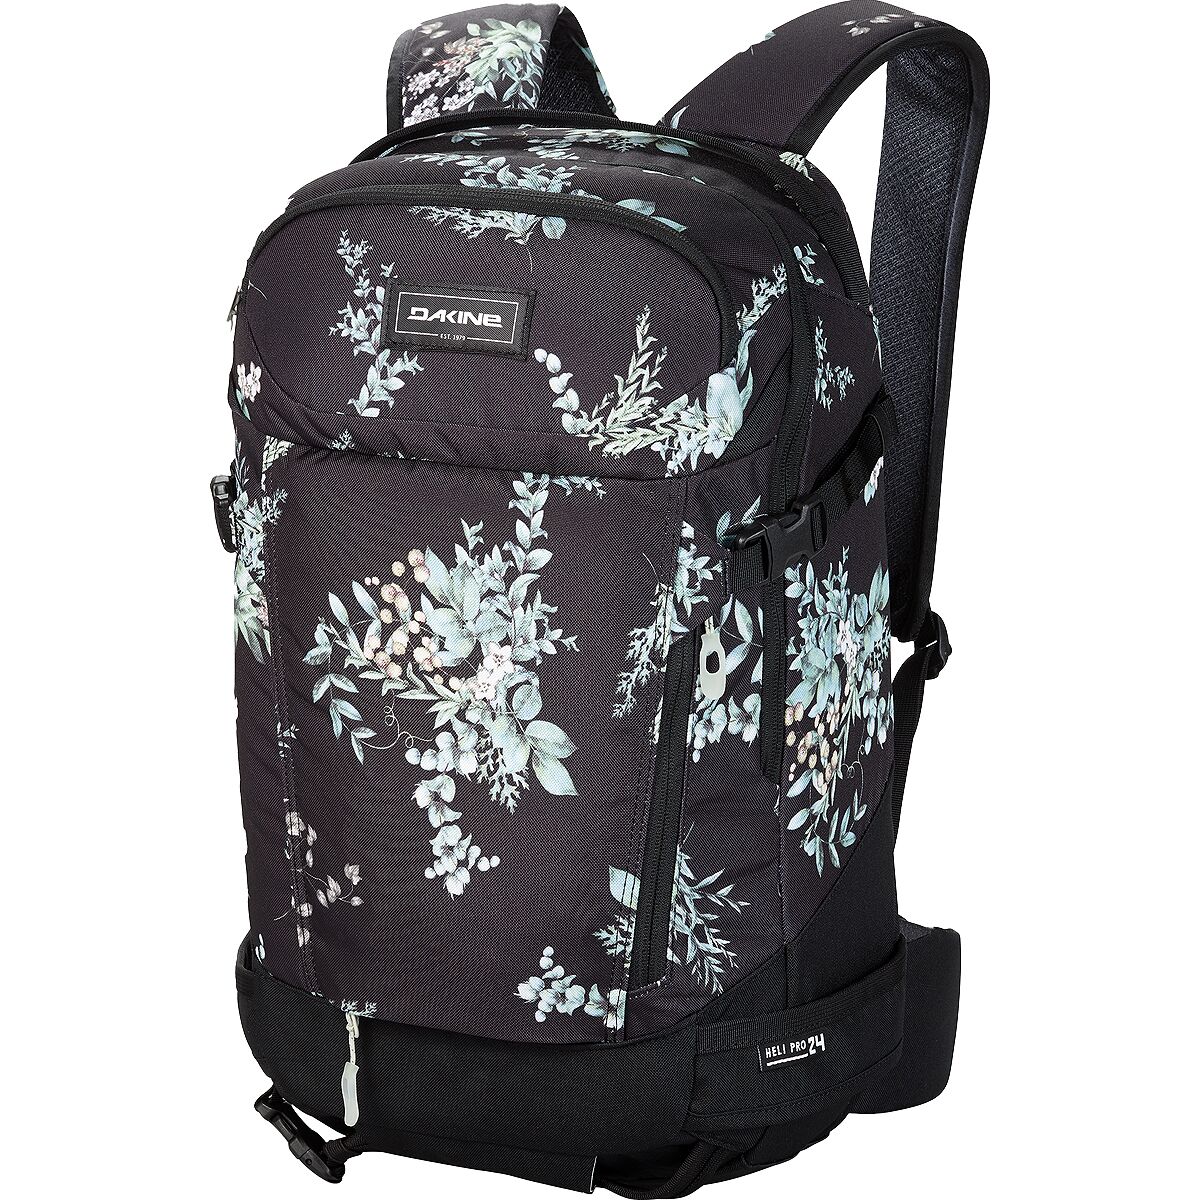 DAKINE Heli Pro 24L Backpack - Women's